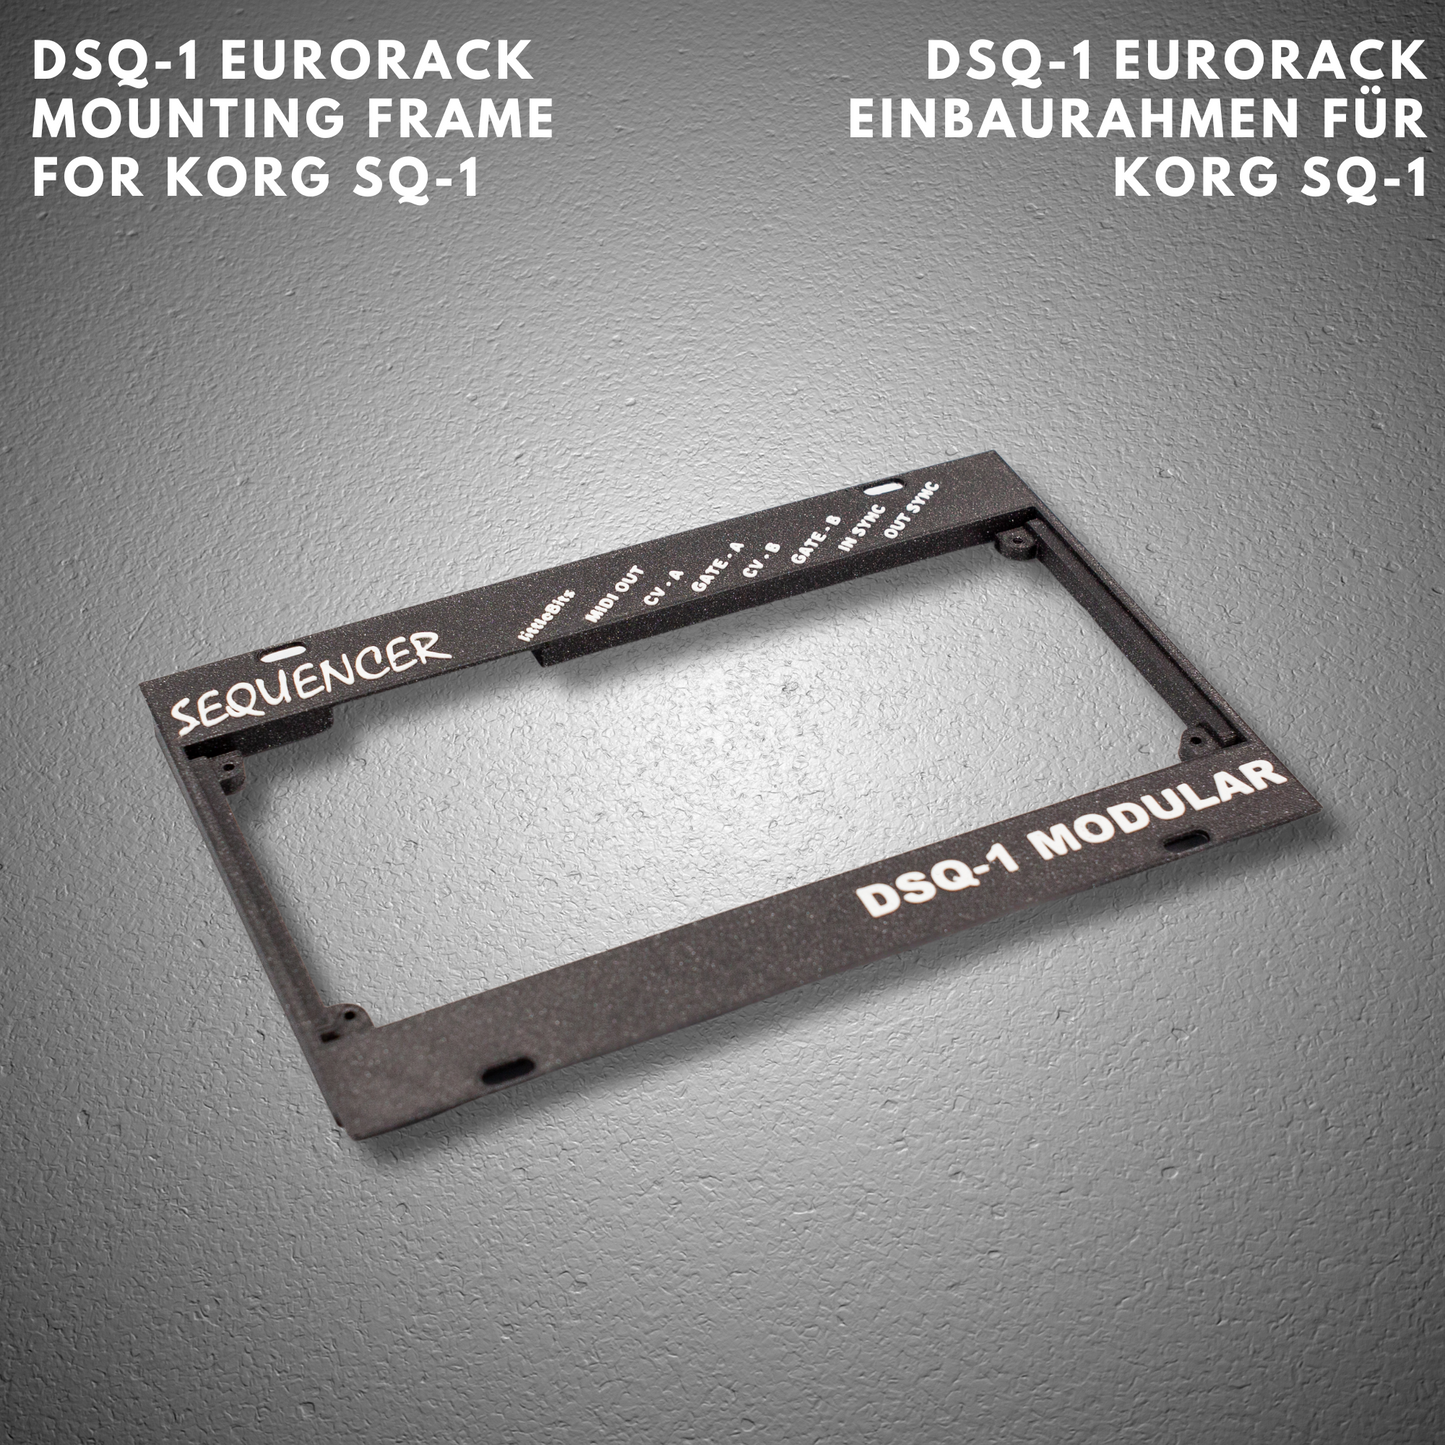 DSQ-1 - Eurorack mounting frame for Korg SQ-1 sequencer